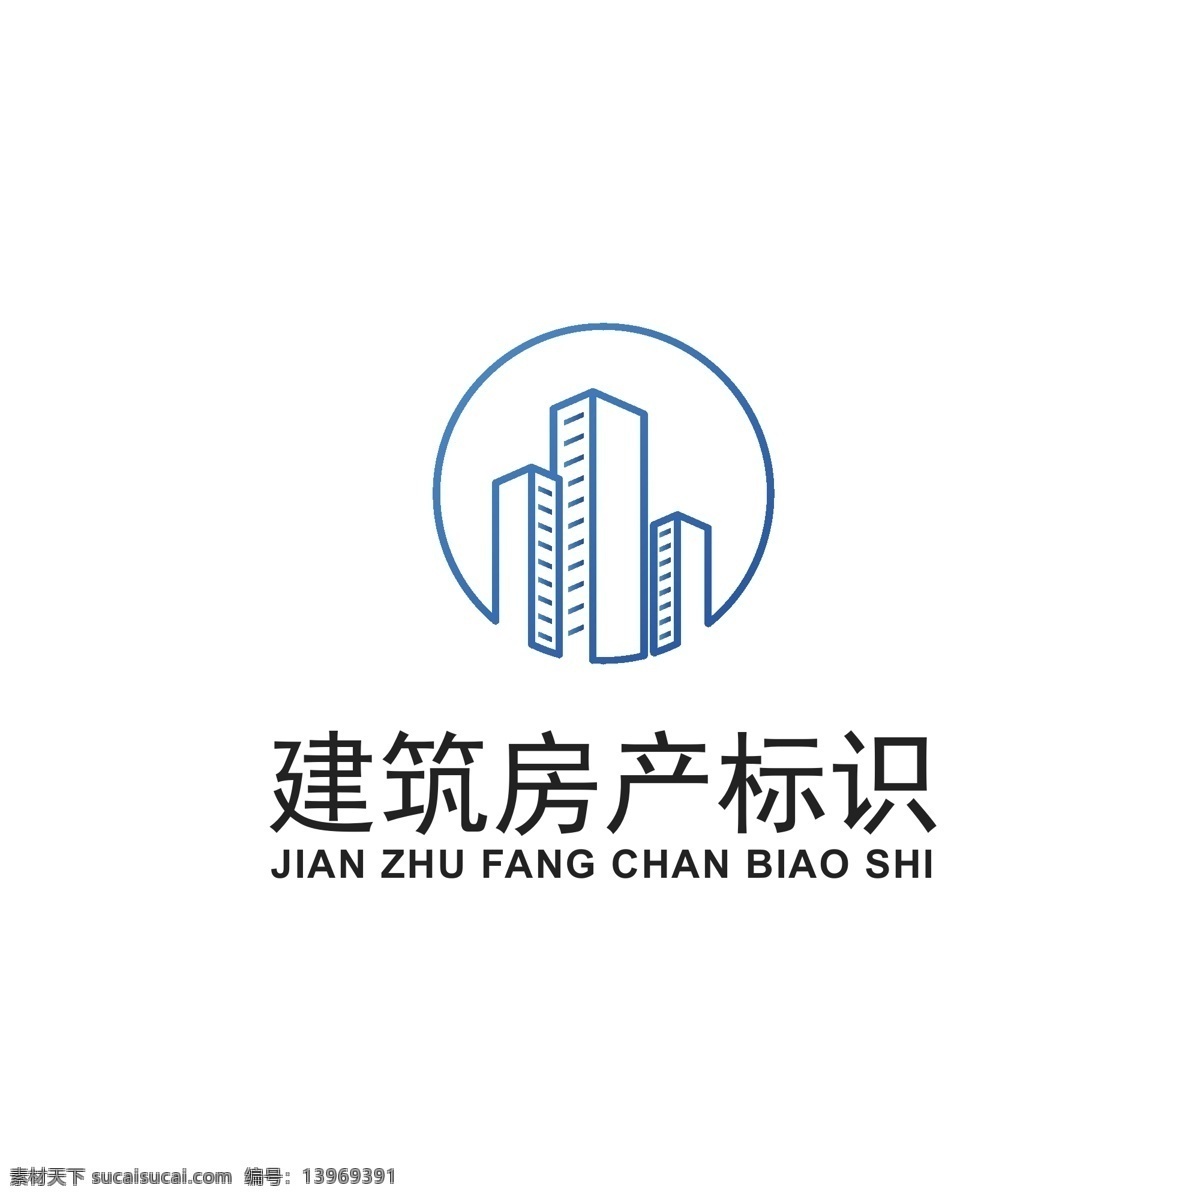 建筑 房产 logo 行业 房产logo 高楼 房子logo 蓝色 简约 logo设计 标识设计 标志 ai矢量